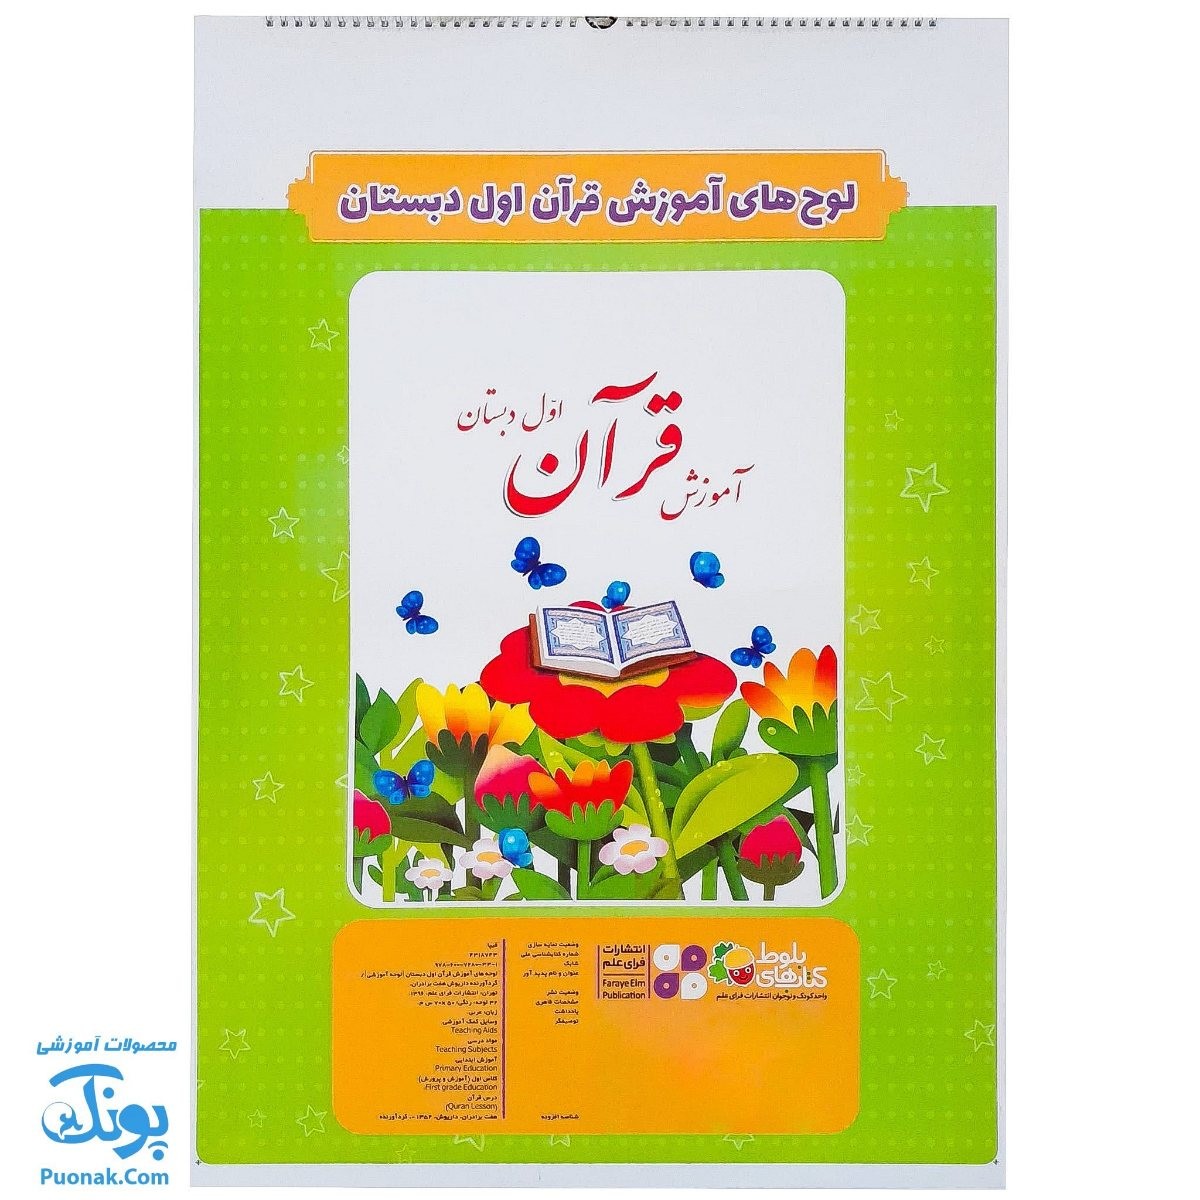 لوح پوستر سیمی آموزش قرآن اول دبستان سیمی کلاسی ویژه معلم نشر فرای علم - پونک (۳۲ صفحه ۷۰*۵۰)